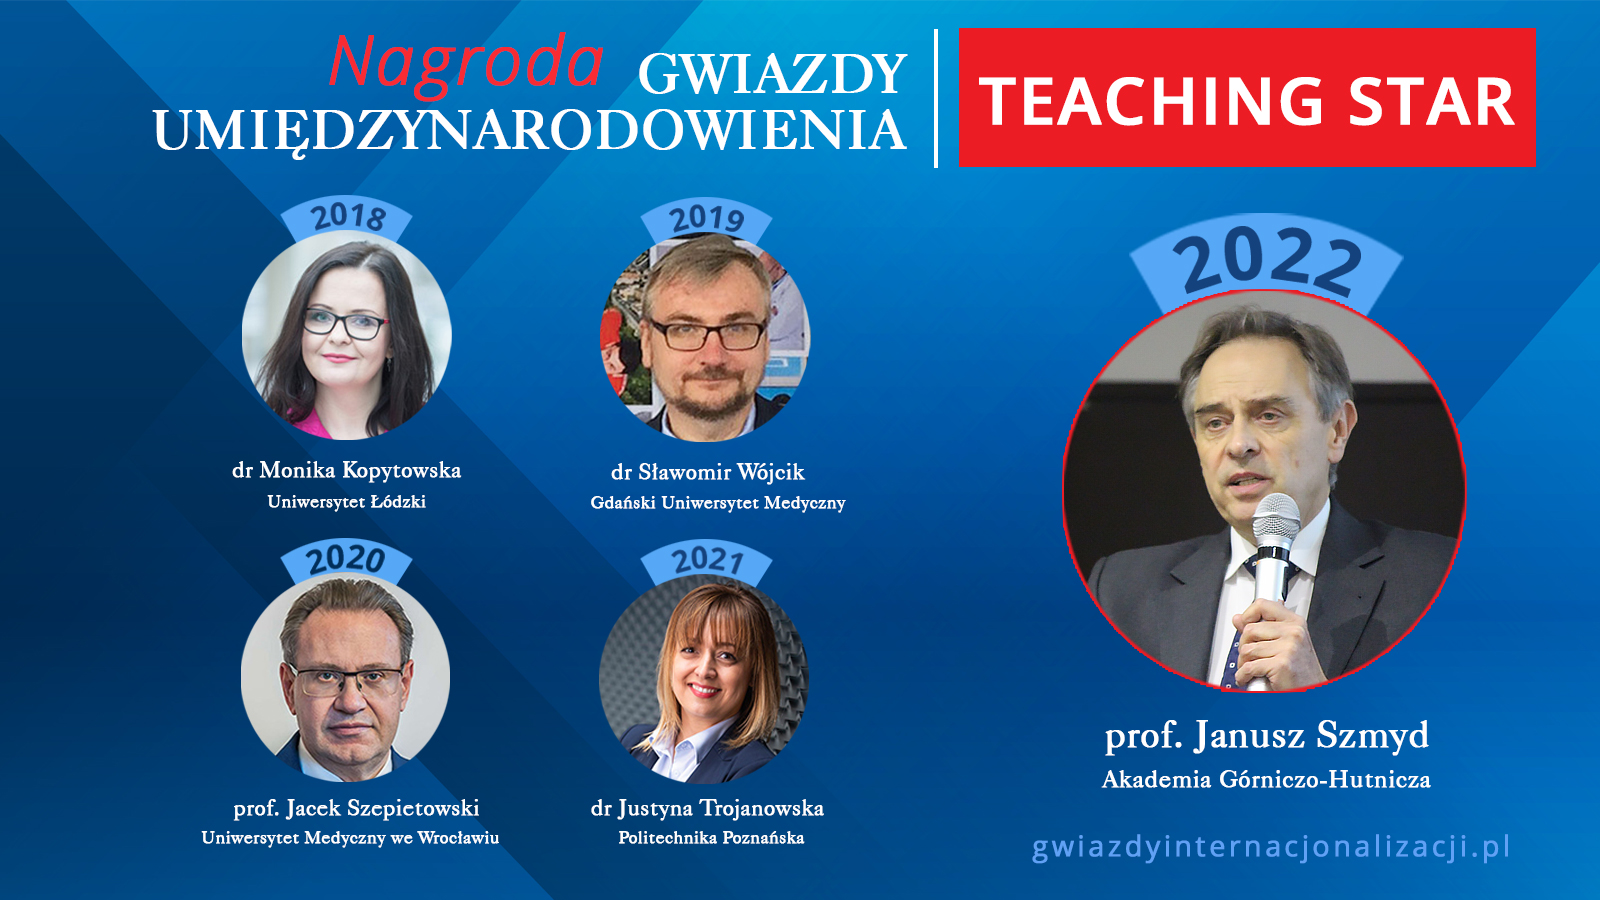 Gwiazda Nauczania / TEACHING STAR 2022 - Janusz Szmyd